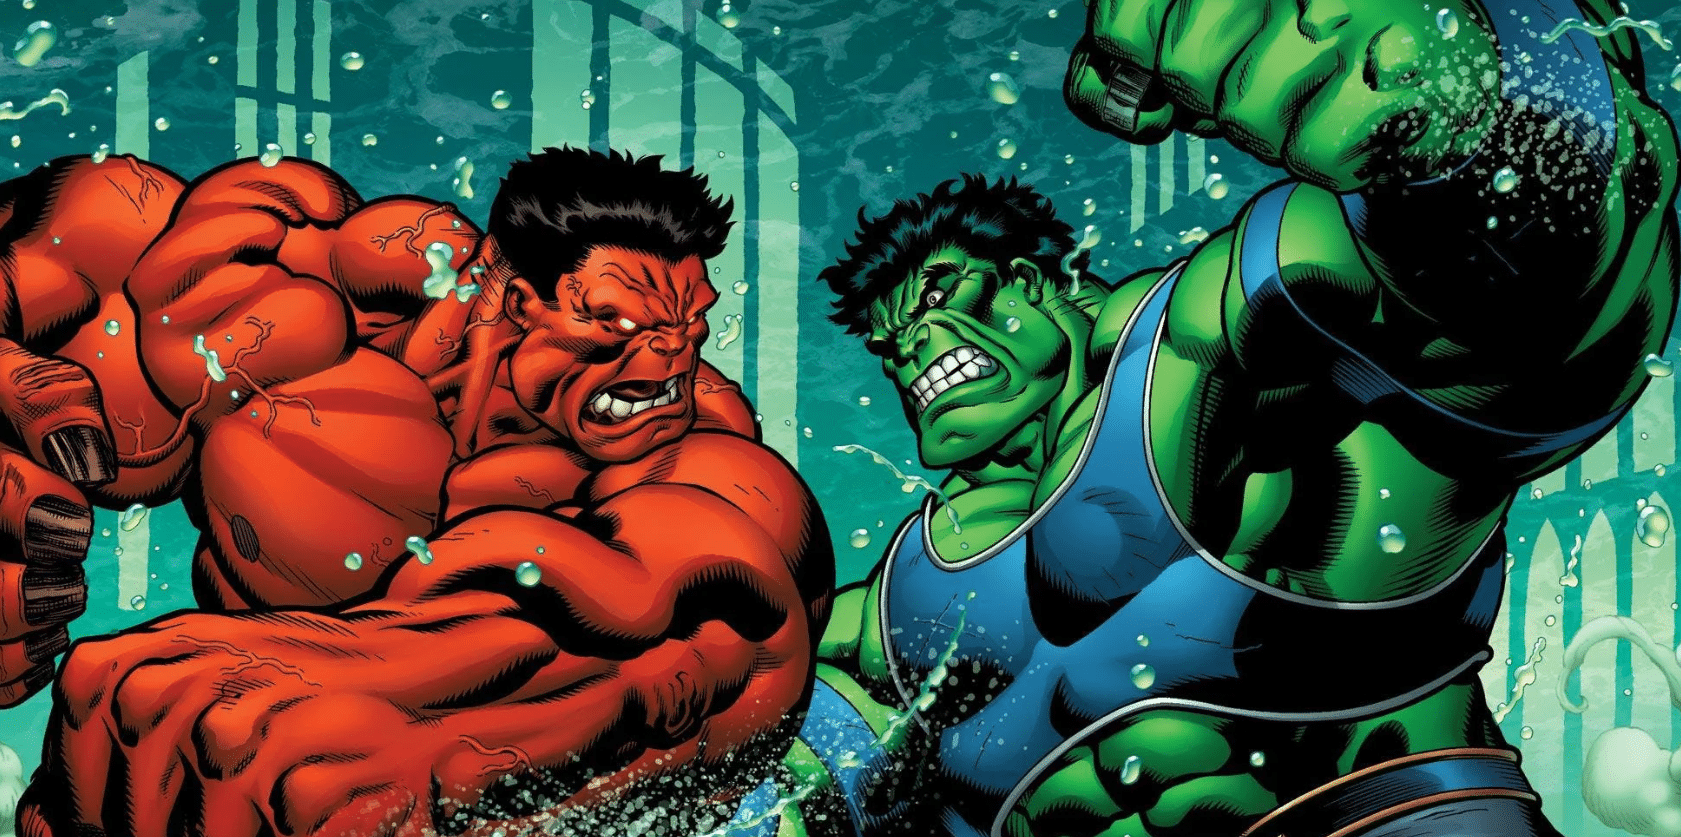 She-Hulk : Le général Ross devrait être l’antagoniste de la série en tant que Red Hulk